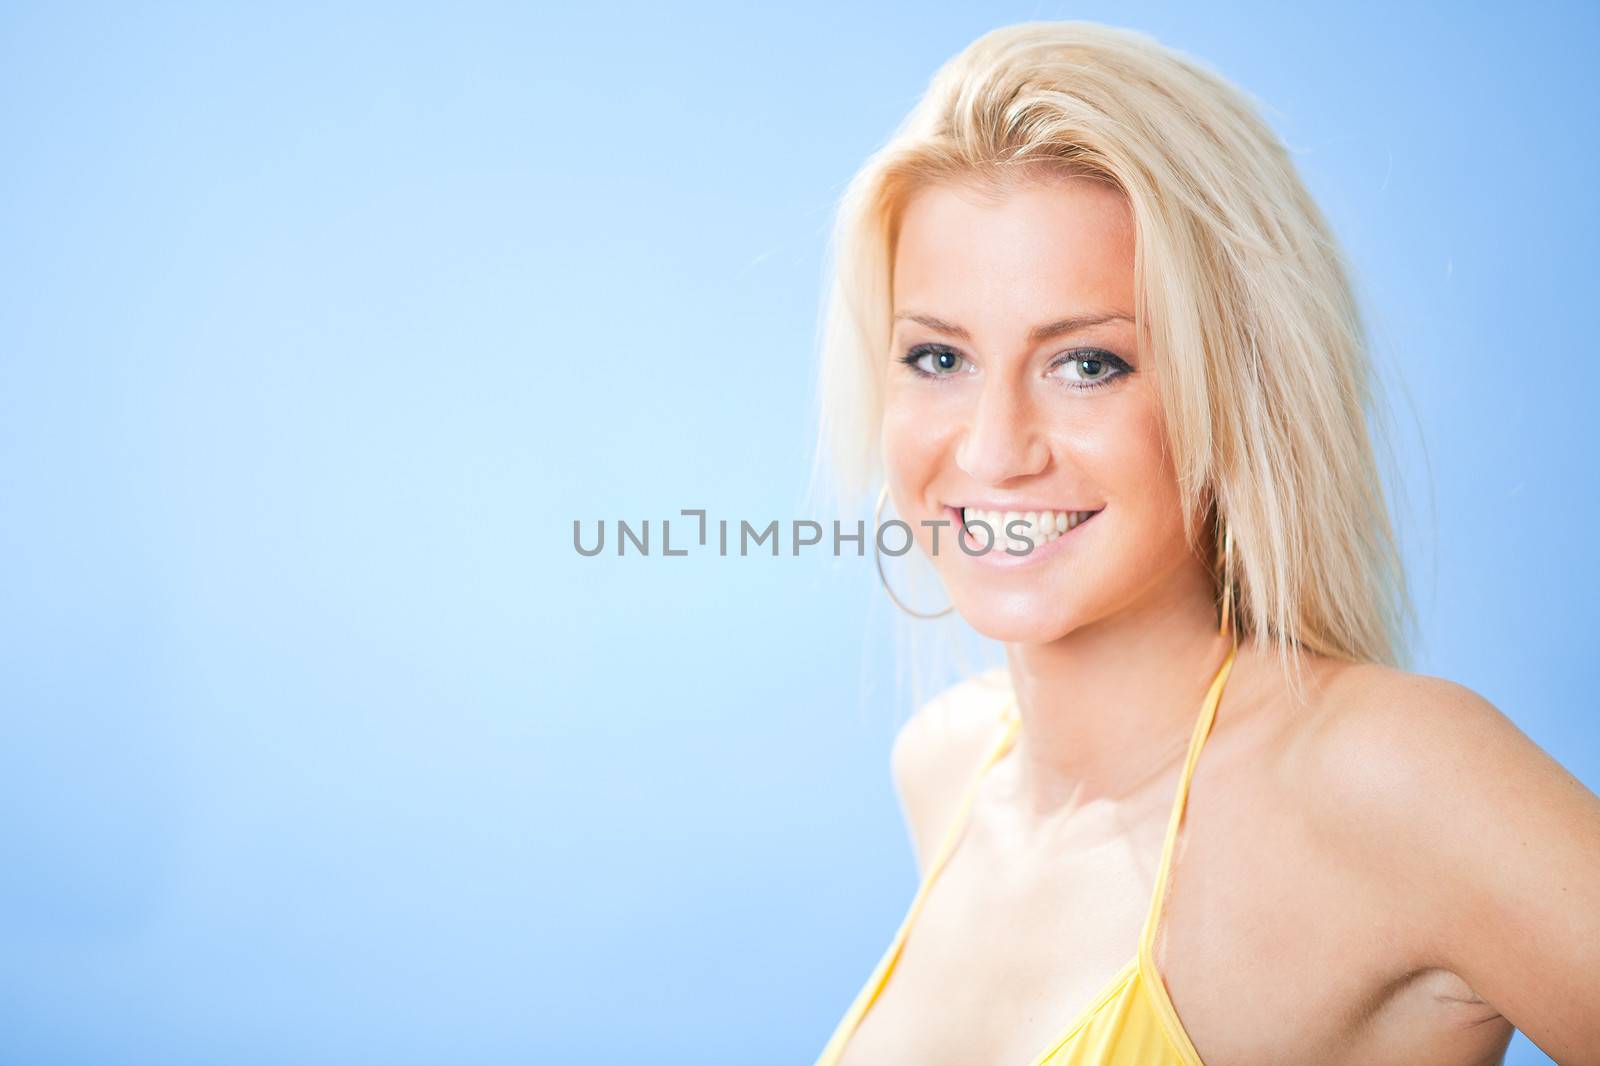 Beautiful young woman in bikini at the beach